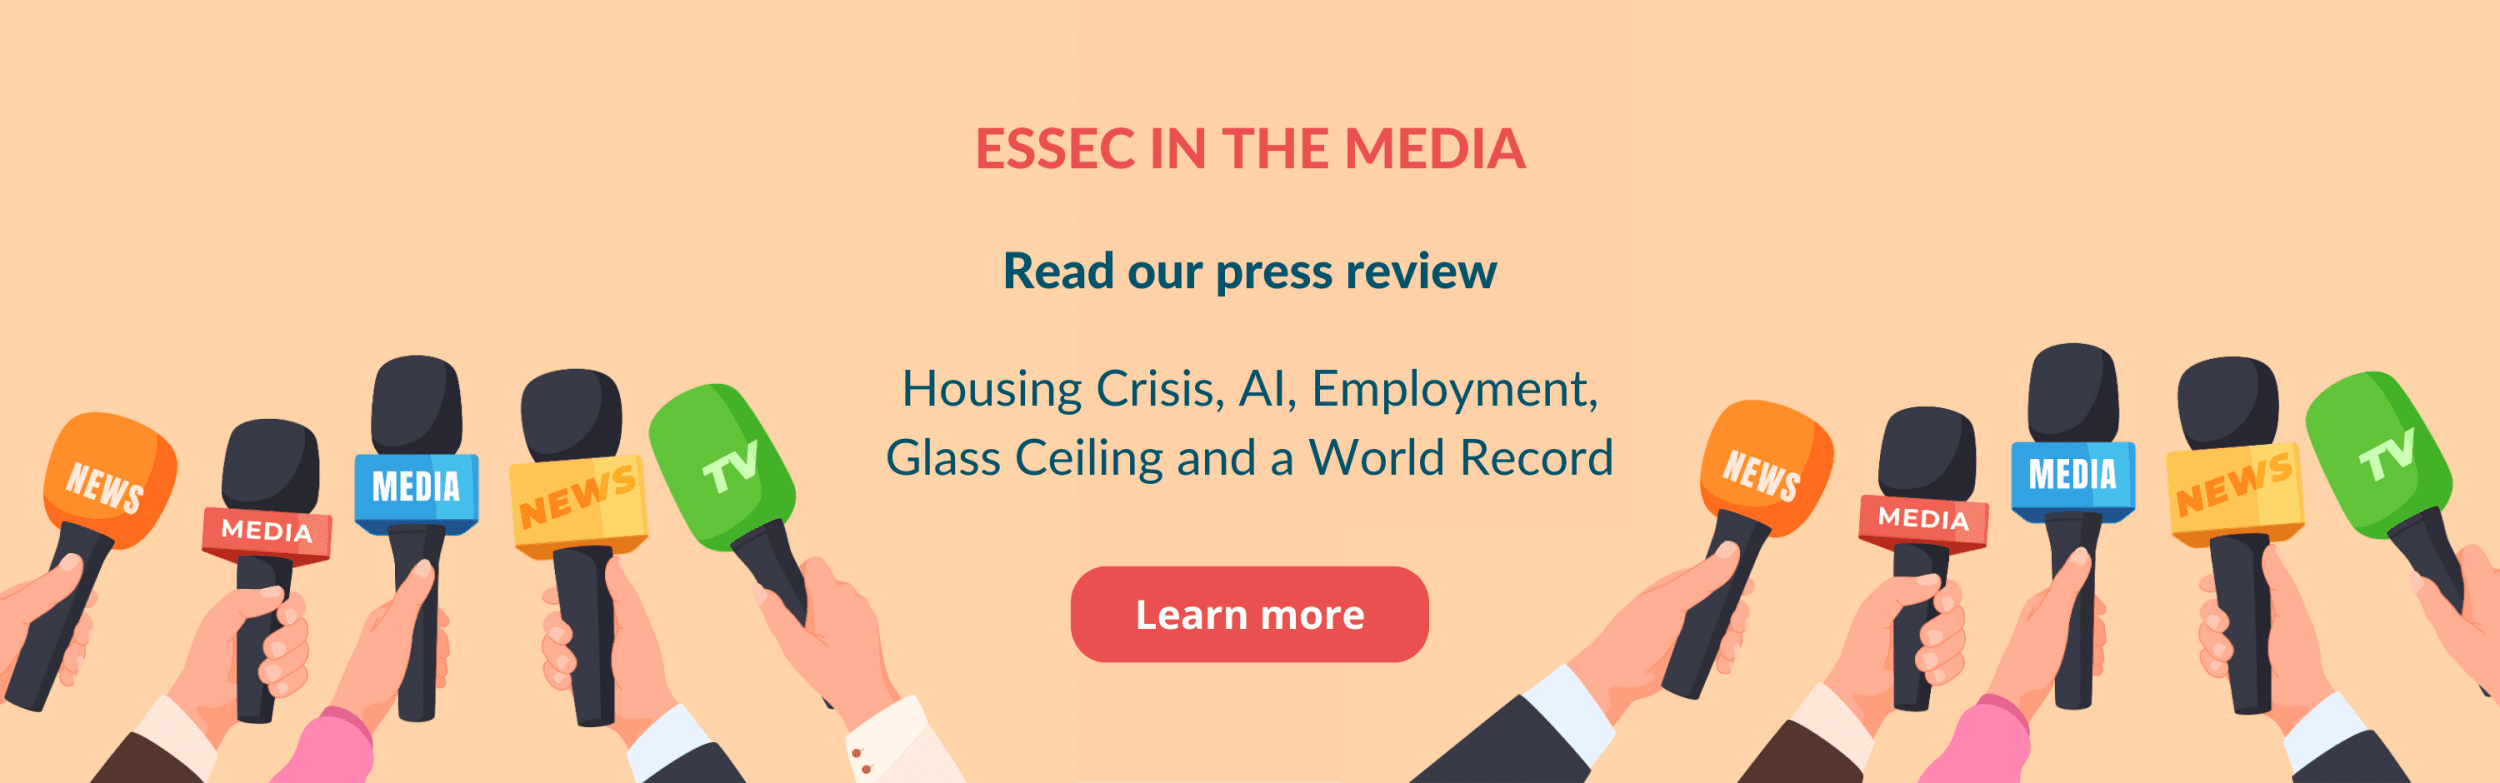 ESSEC in the Media